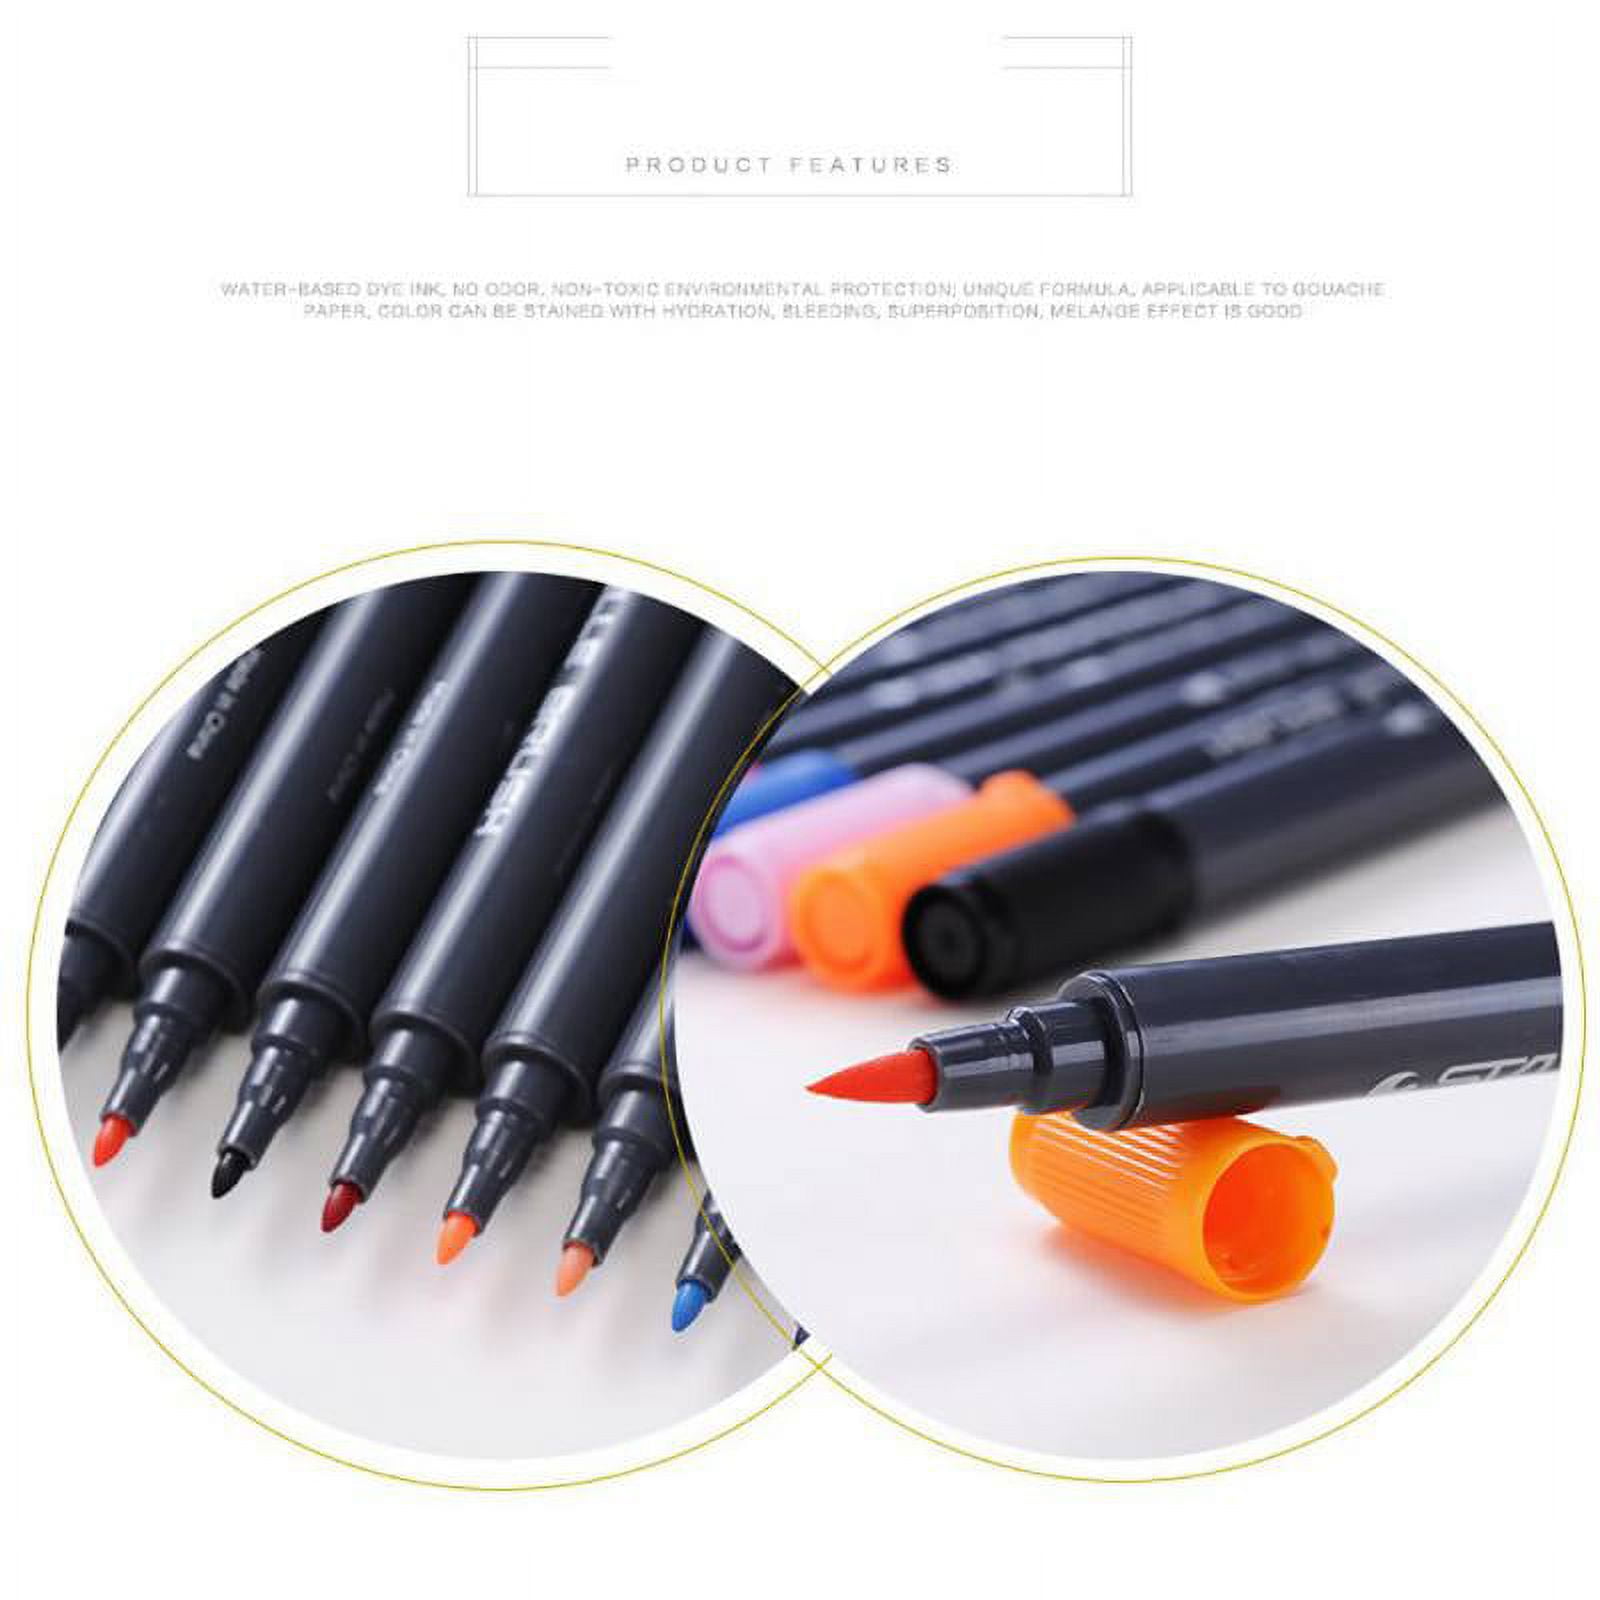 Watercolor Pen Dual Tip Markers Brush Pen For Calligraphy - Temu